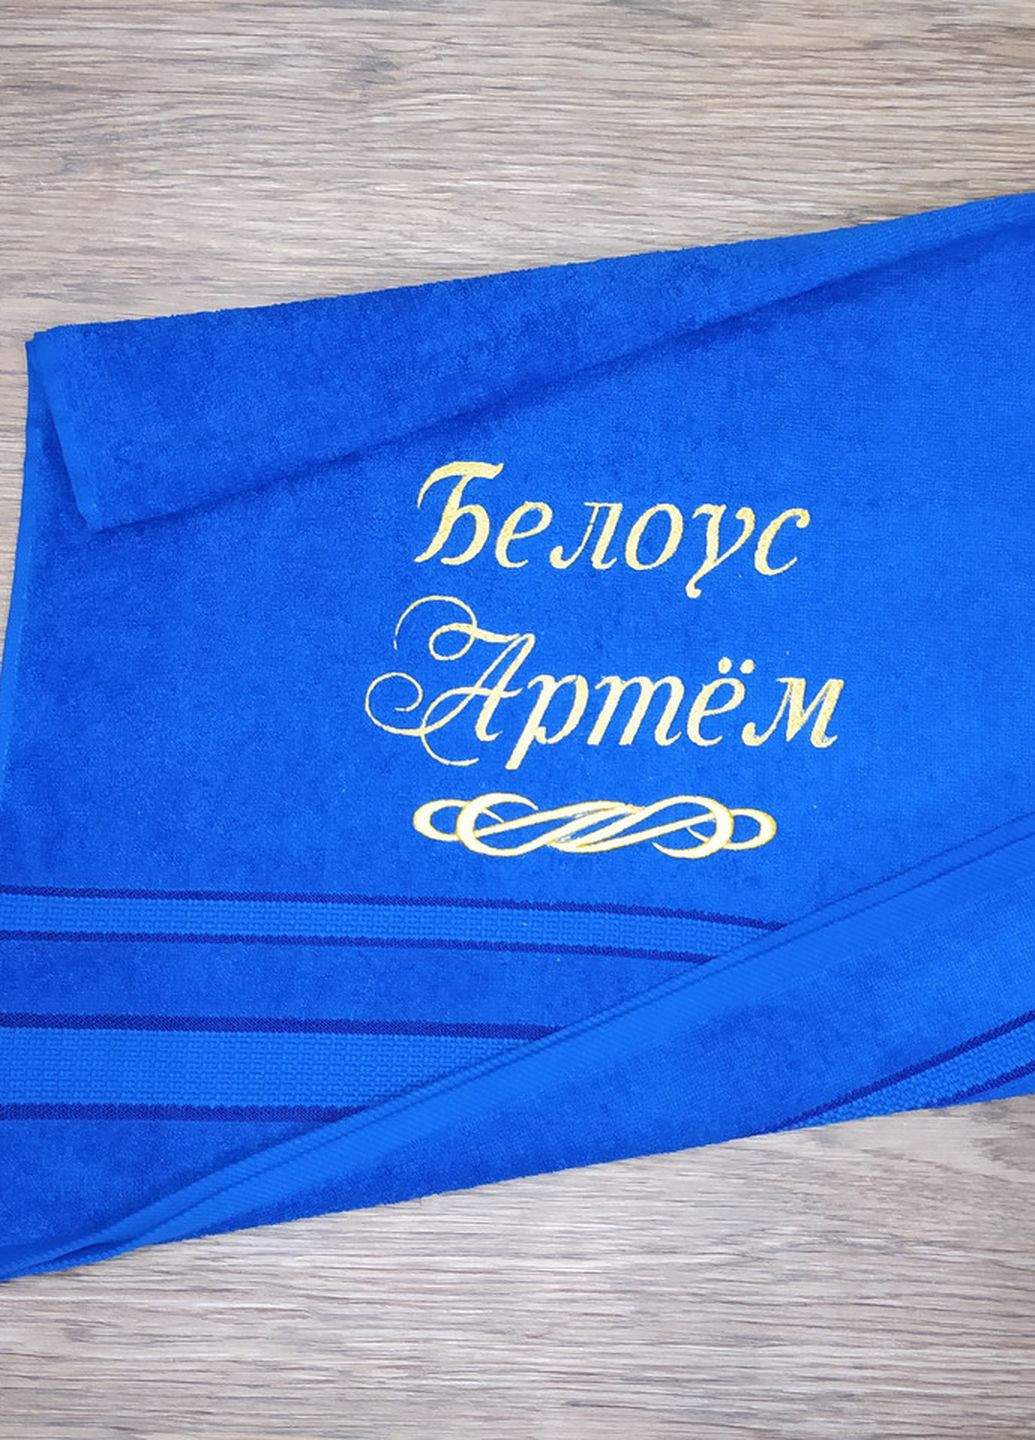 No Brand полотенце с именной вышивкой махровое лицевое 50*90 синий артем 00375 однотонный синий производство - Украина